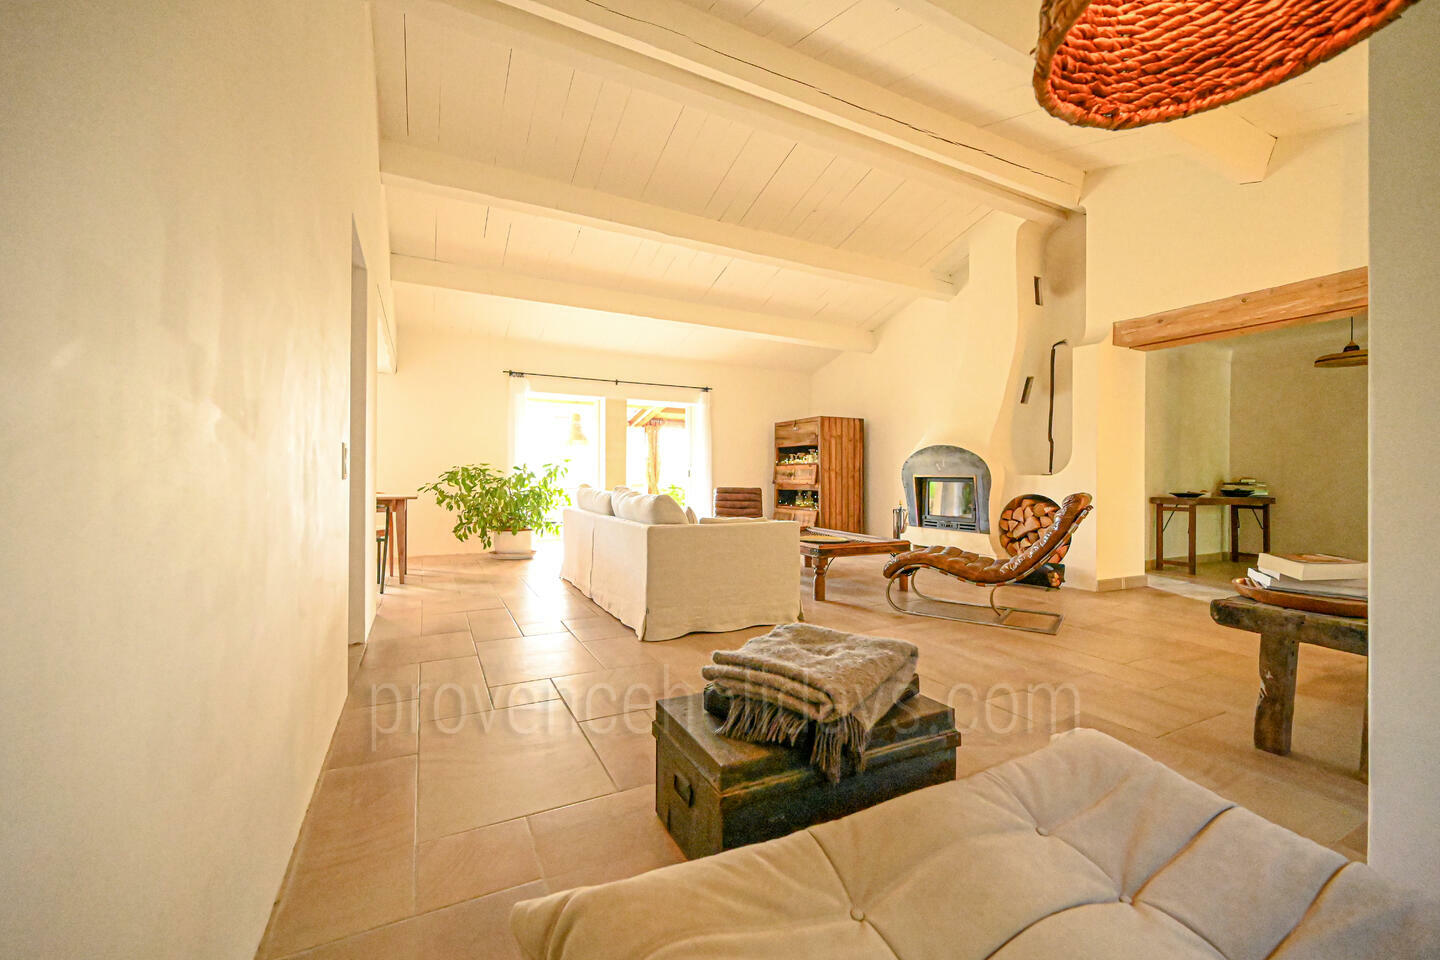 27 - Une Maison en Provence: Villa: Interior